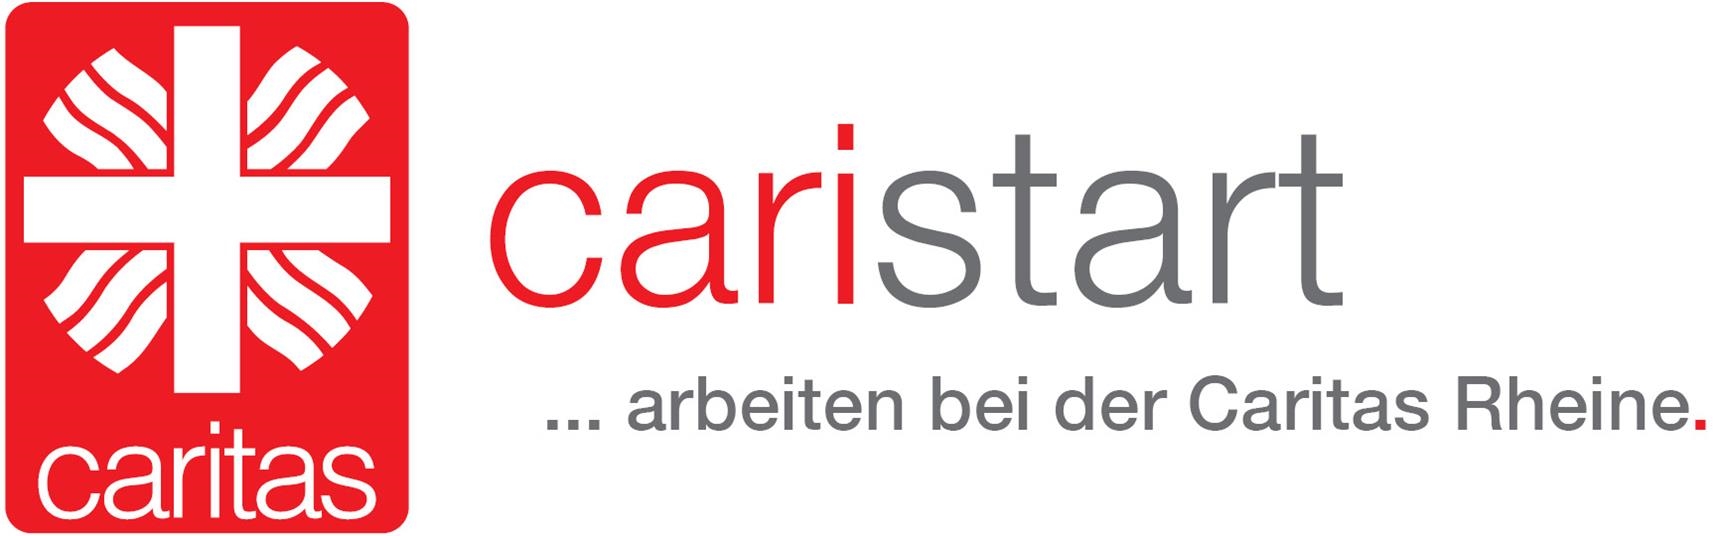 Logo caristart